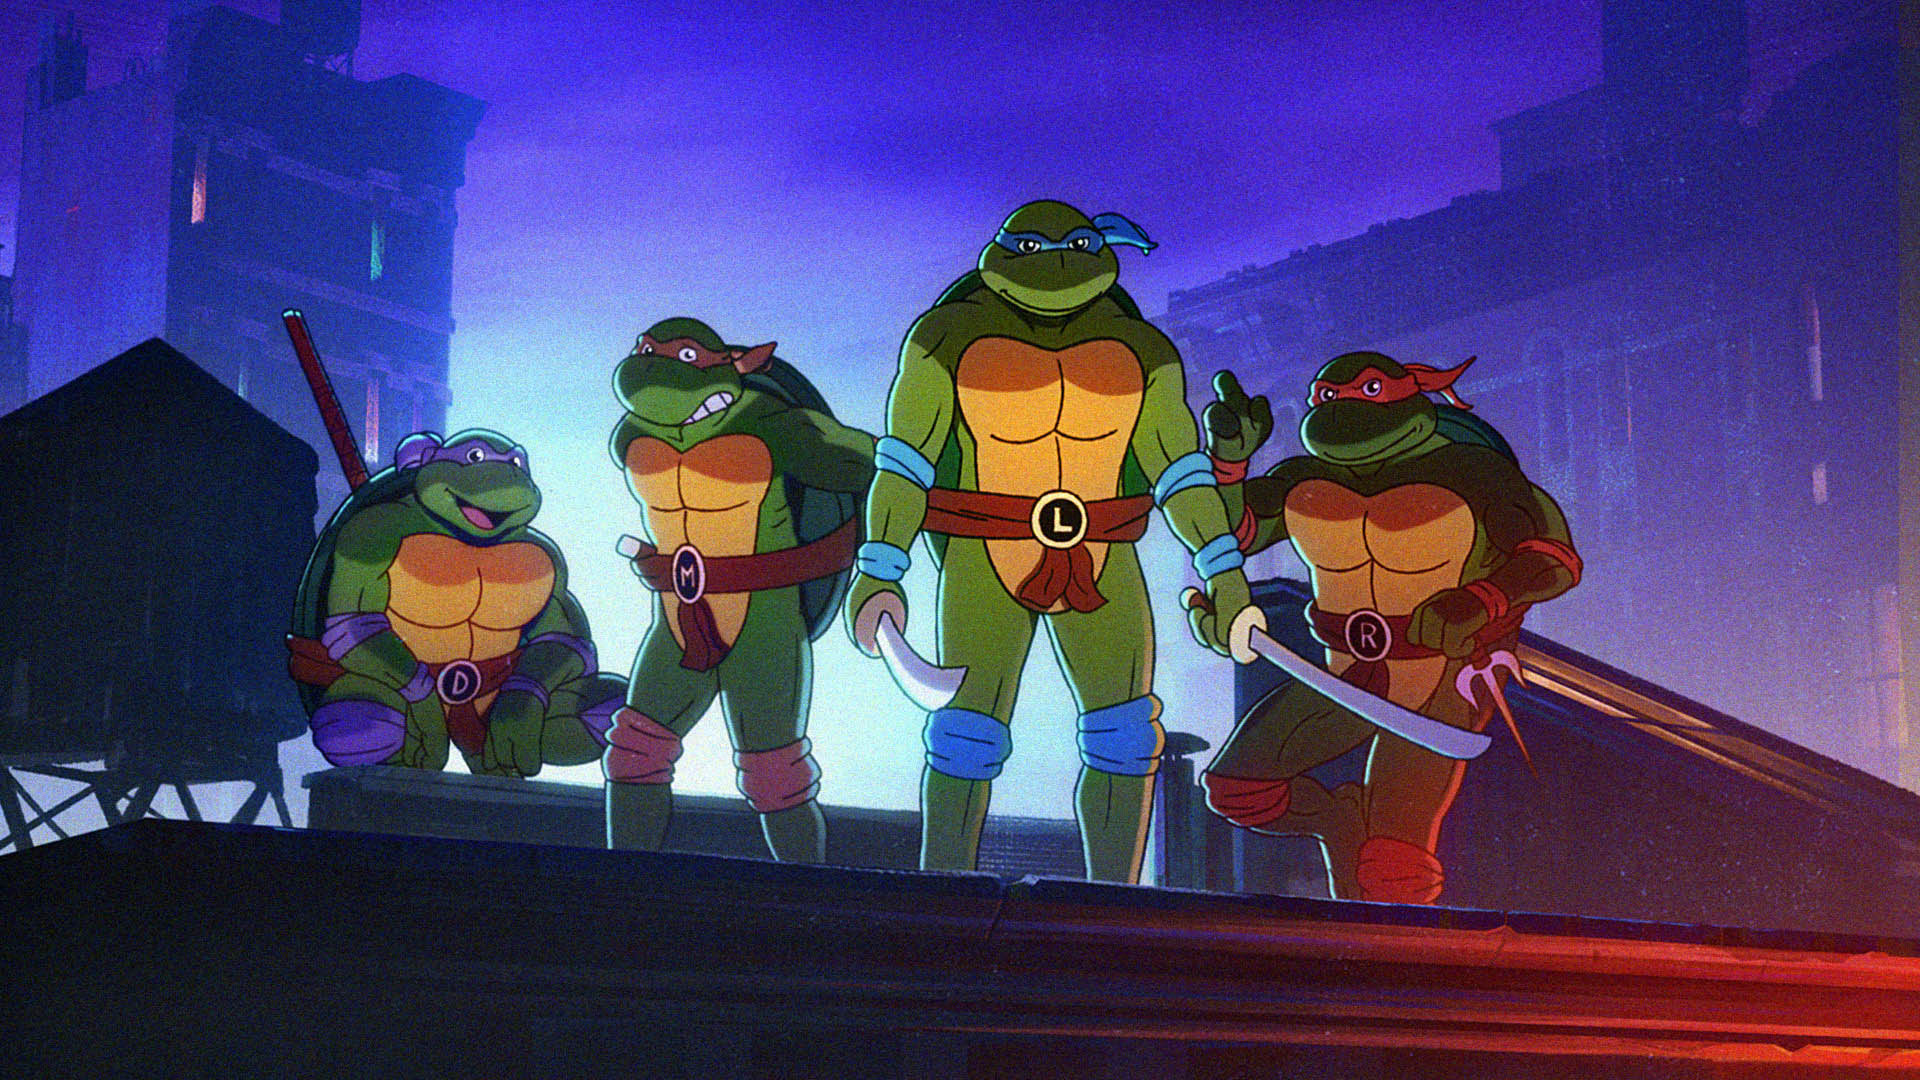 ニンジャ タートルズの新作 Teenage Mutant Ninja Turtles Shredder S Revenge の制作を発表するトレイラーが公開